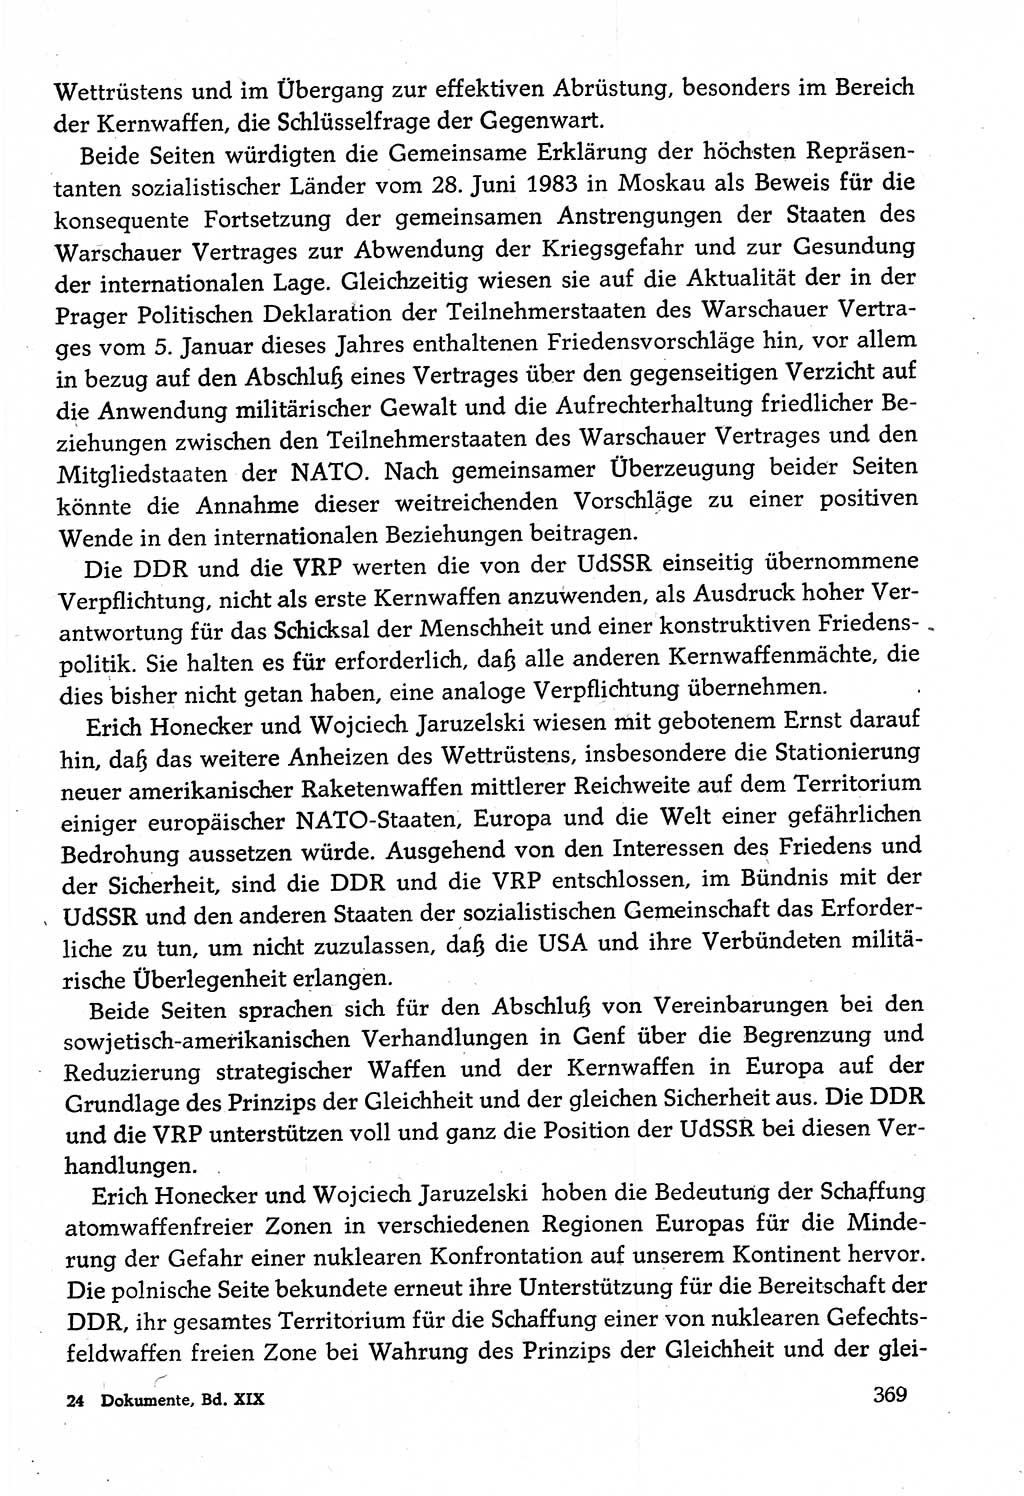 Dokumente der Sozialistischen Einheitspartei Deutschlands (SED) [Deutsche Demokratische Republik (DDR)] 1982-1983, Seite 369 (Dok. SED DDR 1982-1983, S. 369)